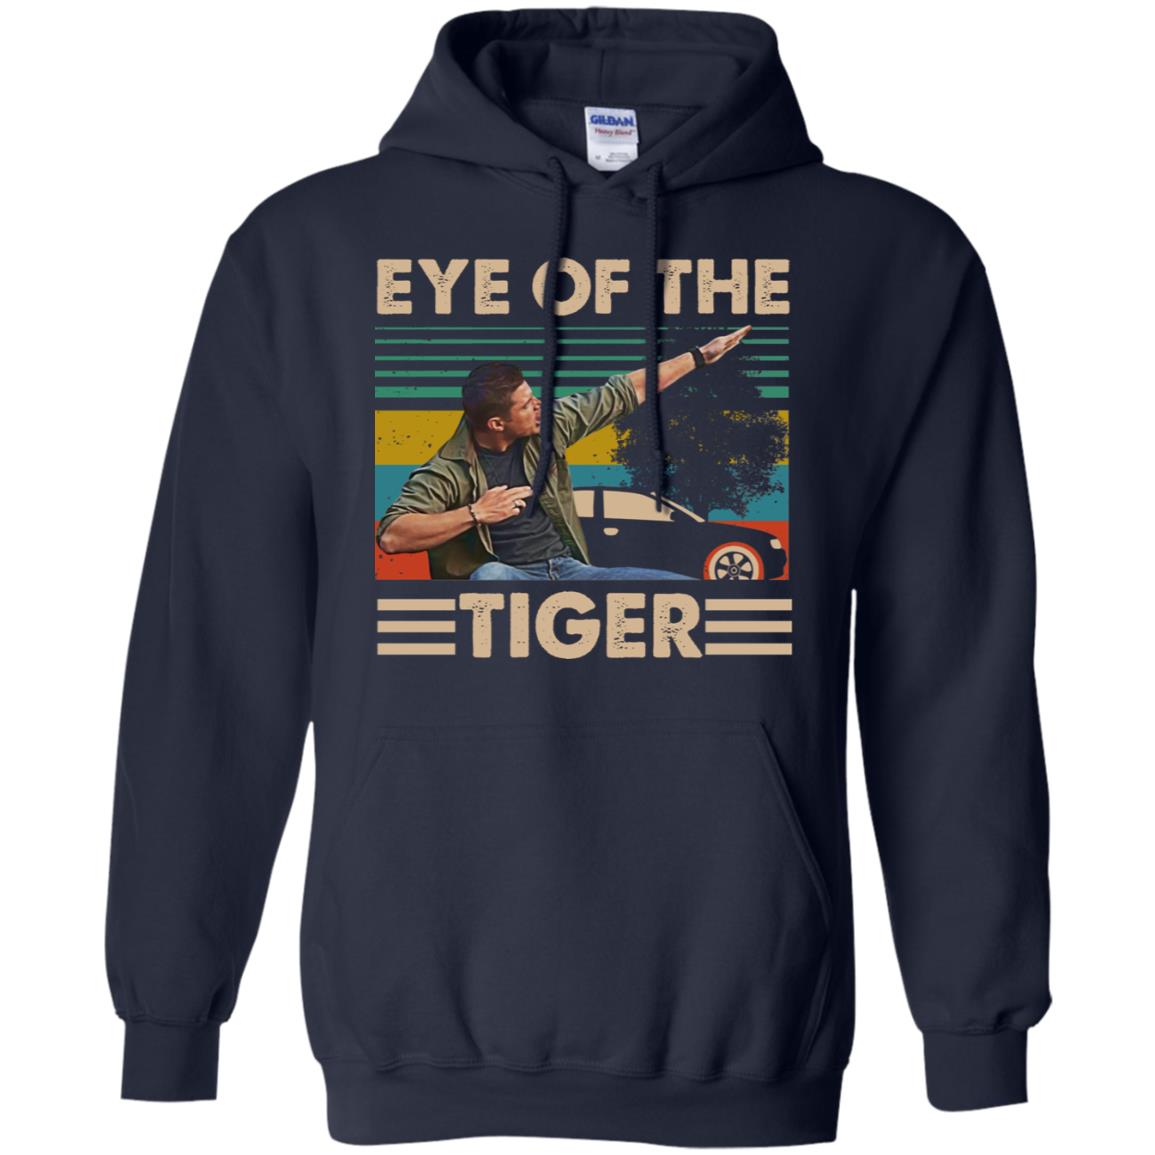 supernatural eye of the tiger shirt